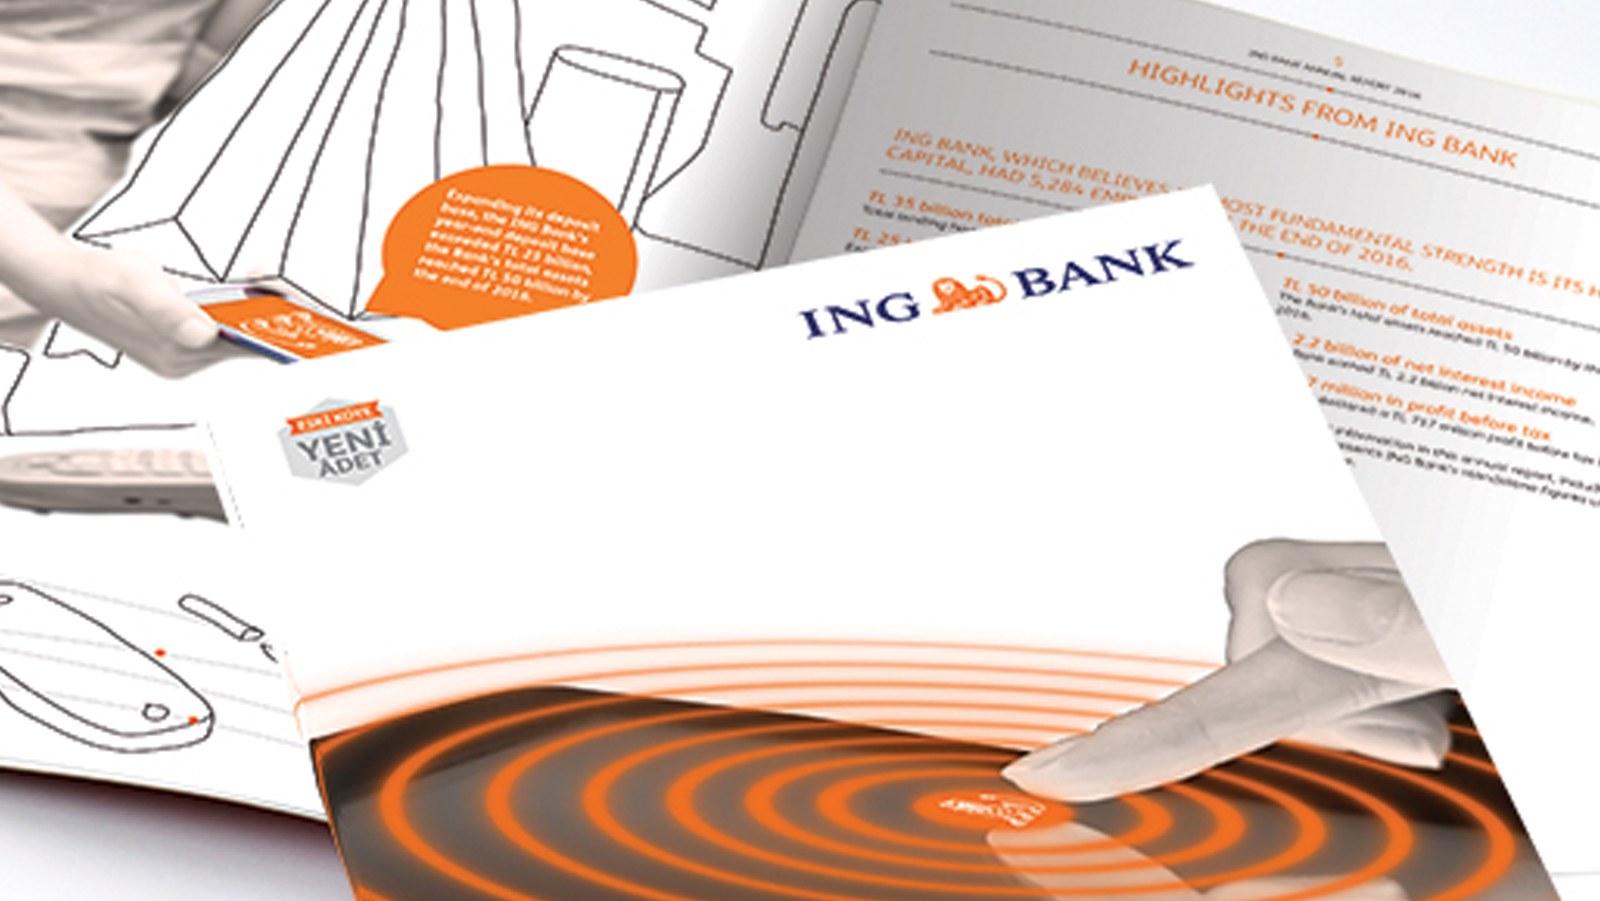 ING BANK / 2016 Faaliyet Raporu / 2016 Annual Report